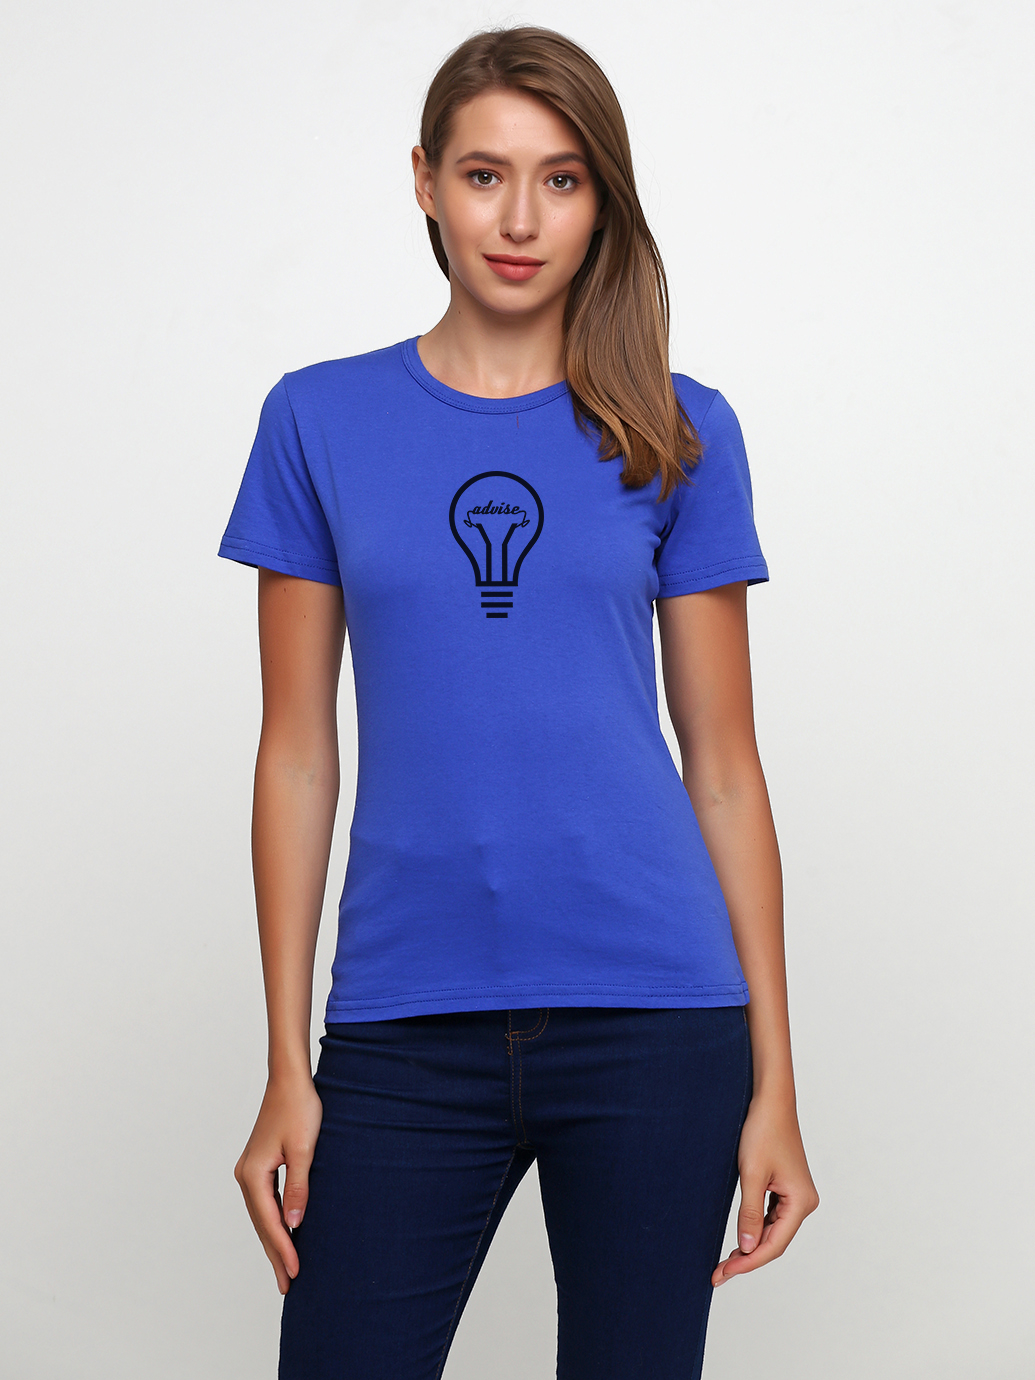 Синяя однотонная футболка женская. Однотонная голубая футболка женская. Футболка синяя женская Натали. S 19 j